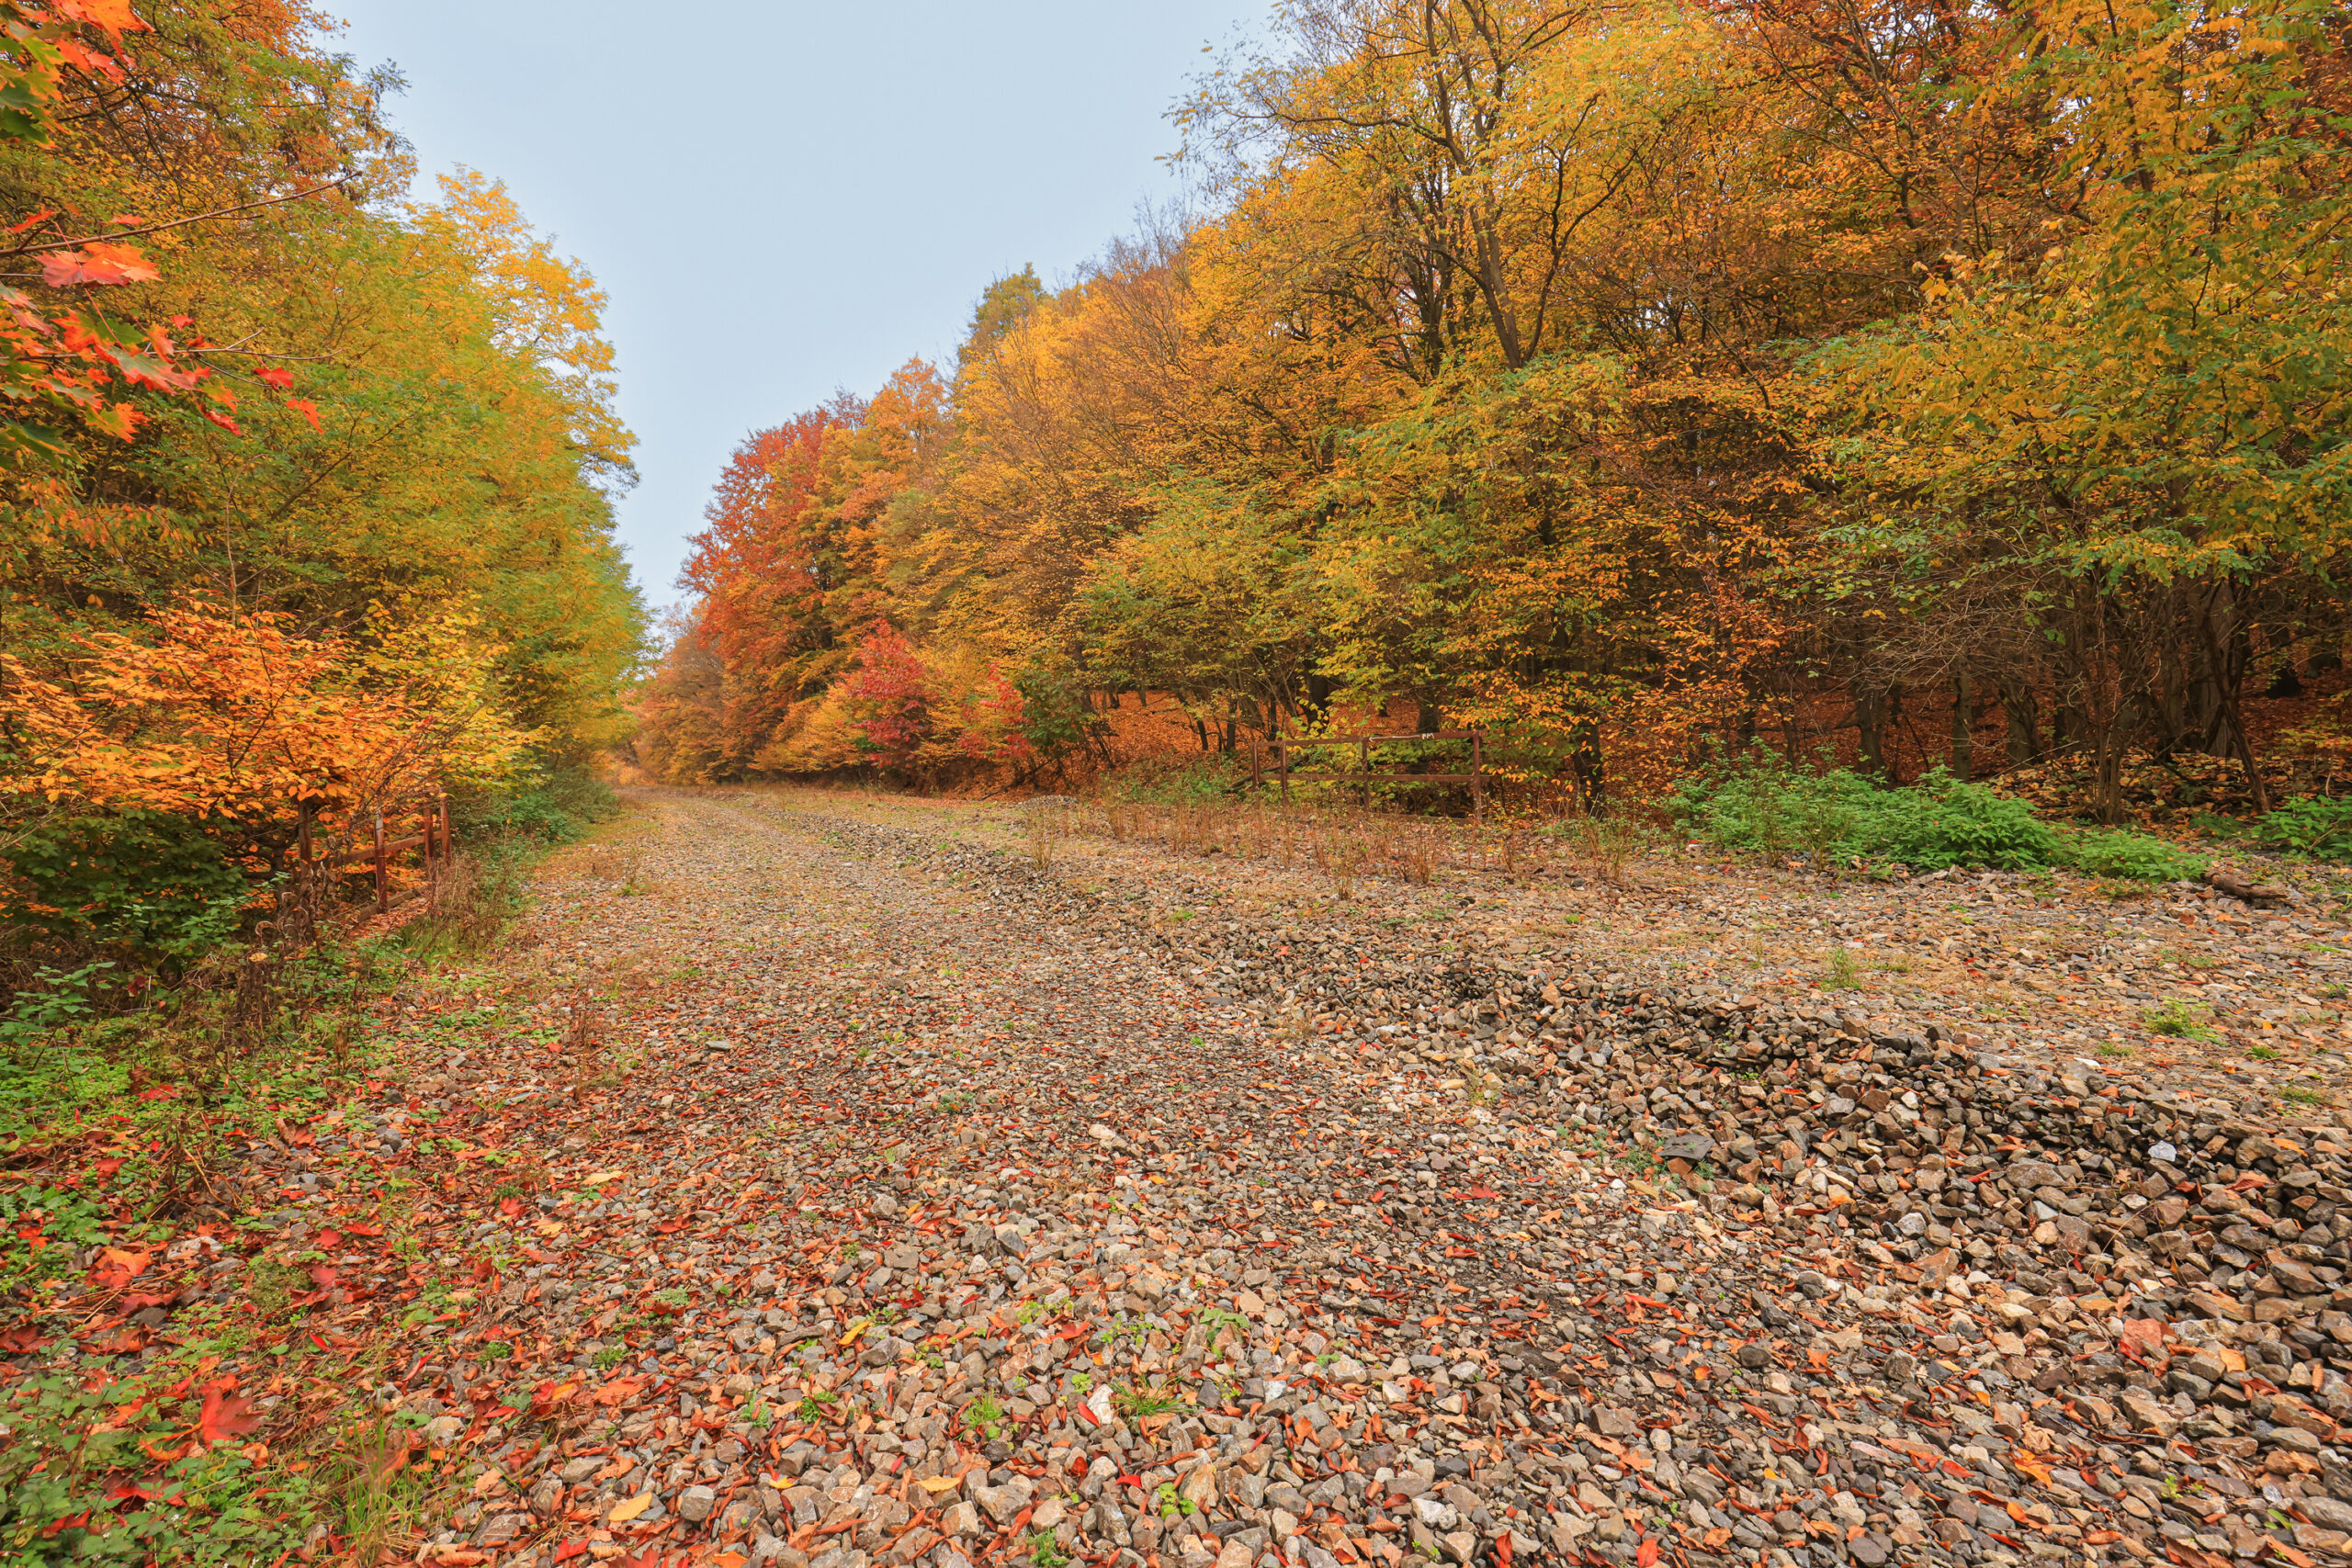 <h1>Zábělá – bývalá železniční trať</h1><br />
Od spodní pravé strany směrem k pozadí snímku prochází široký pás trasy bývalé železnice pokrytý kamenivem. Po stranách lemováno listnatými lesy v pestrých podzimních barvách.